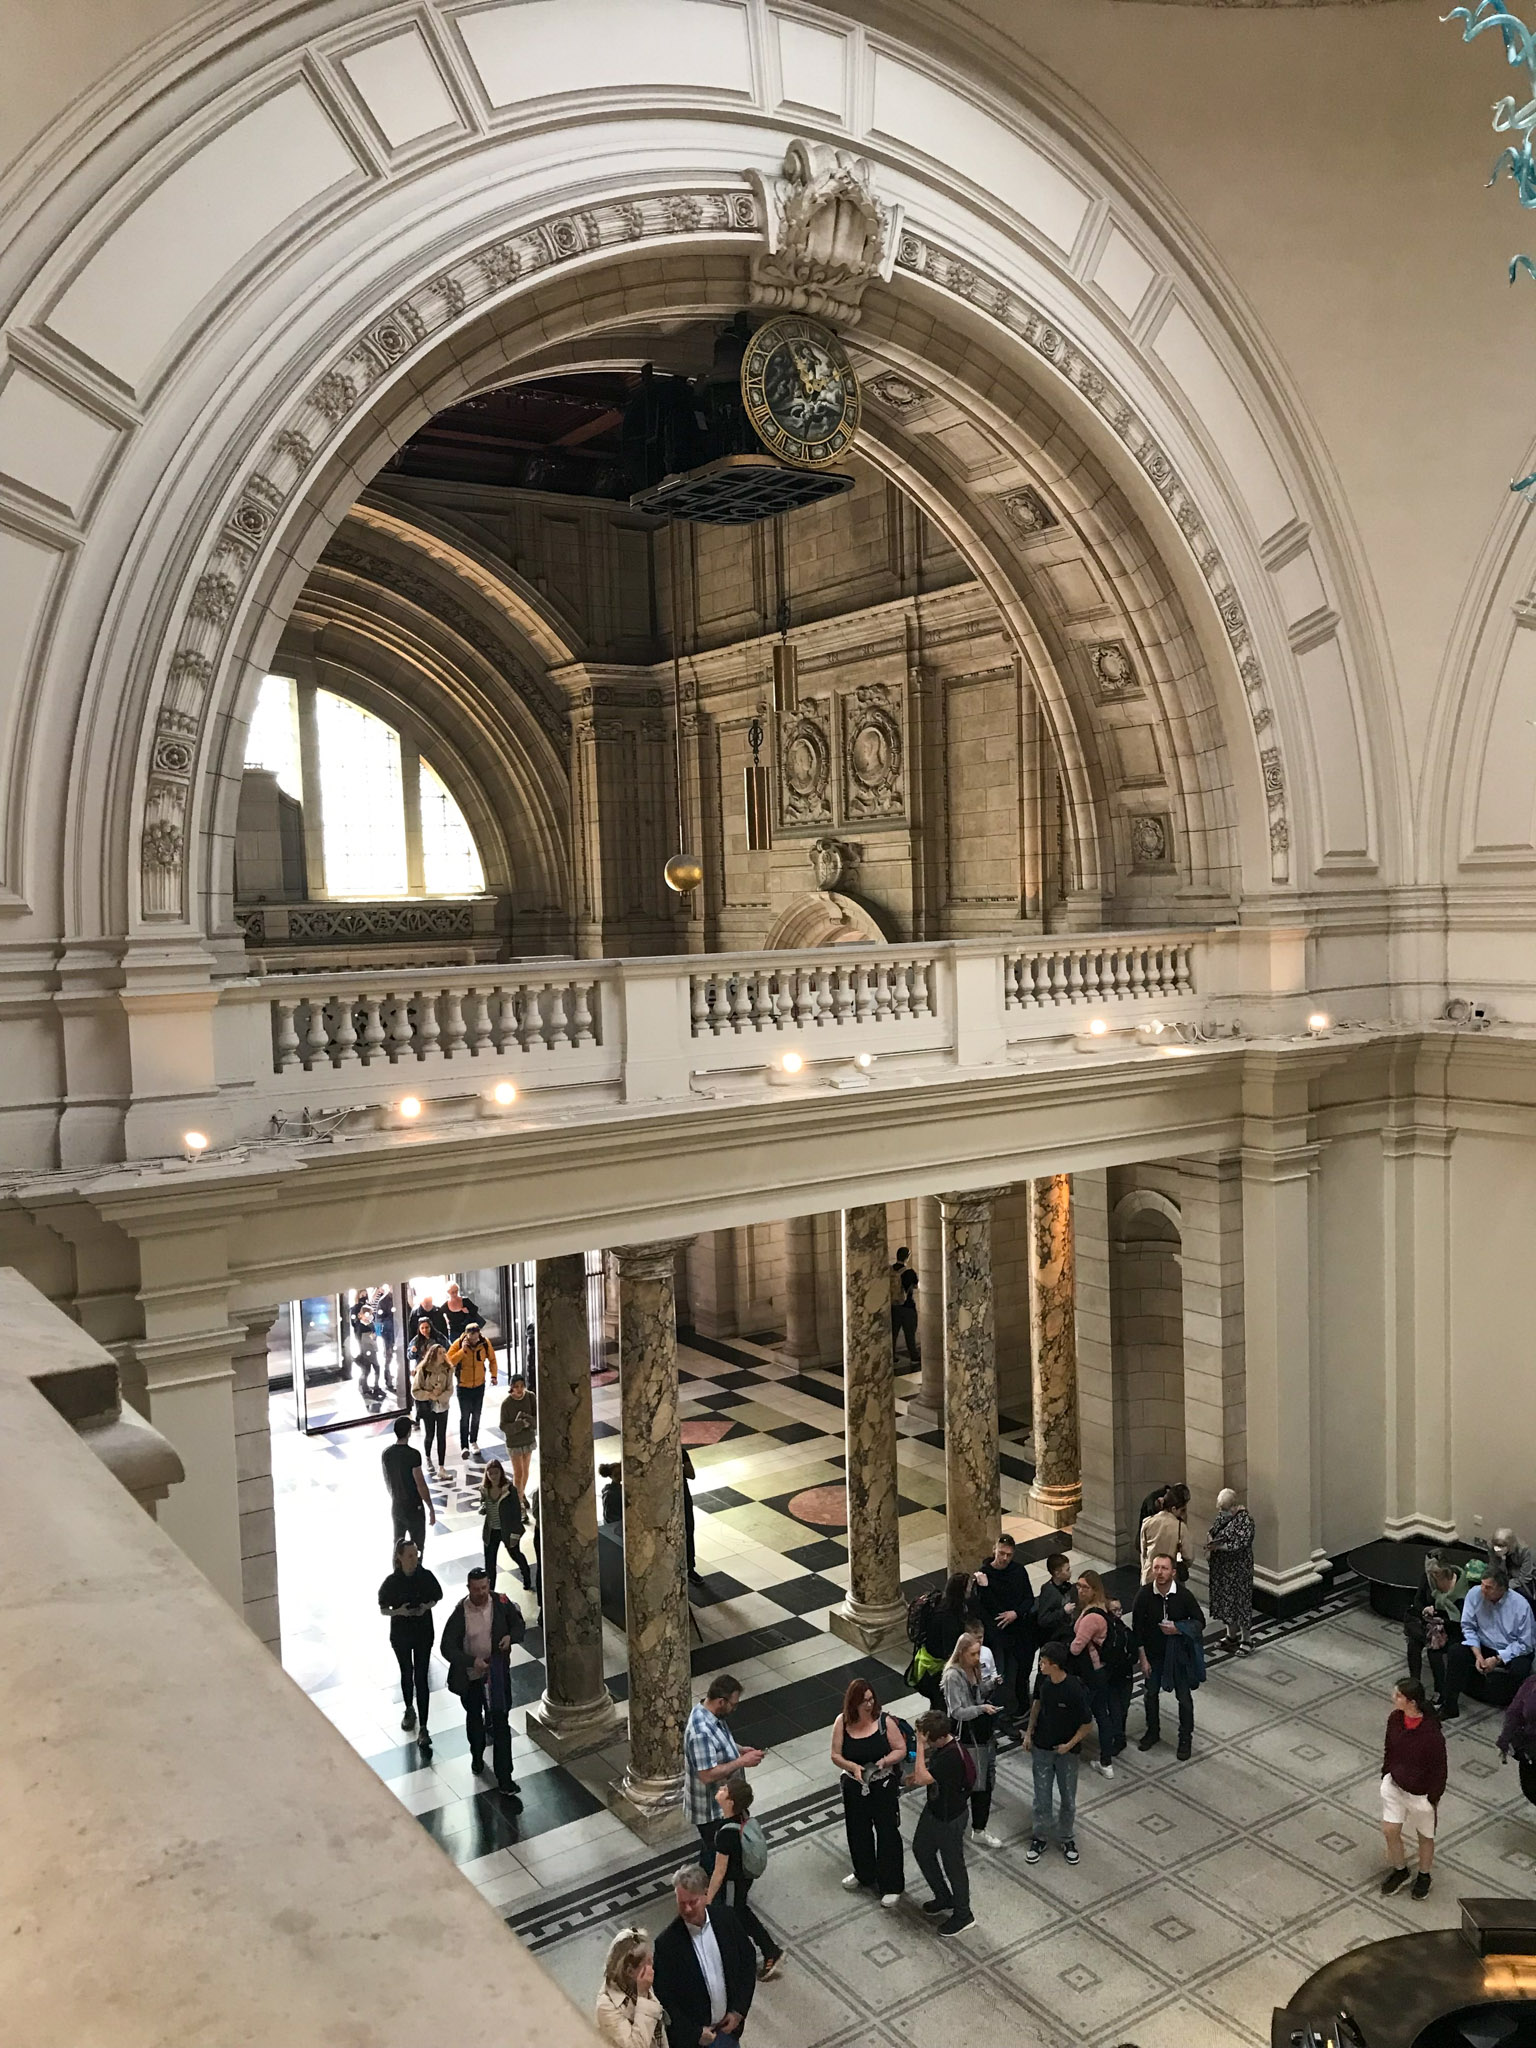 KeramiCo vidět v Londýně za 3 dny: Victoria and Albert Museum, Londýnka ve Victoria and Albert Museum, Londýn